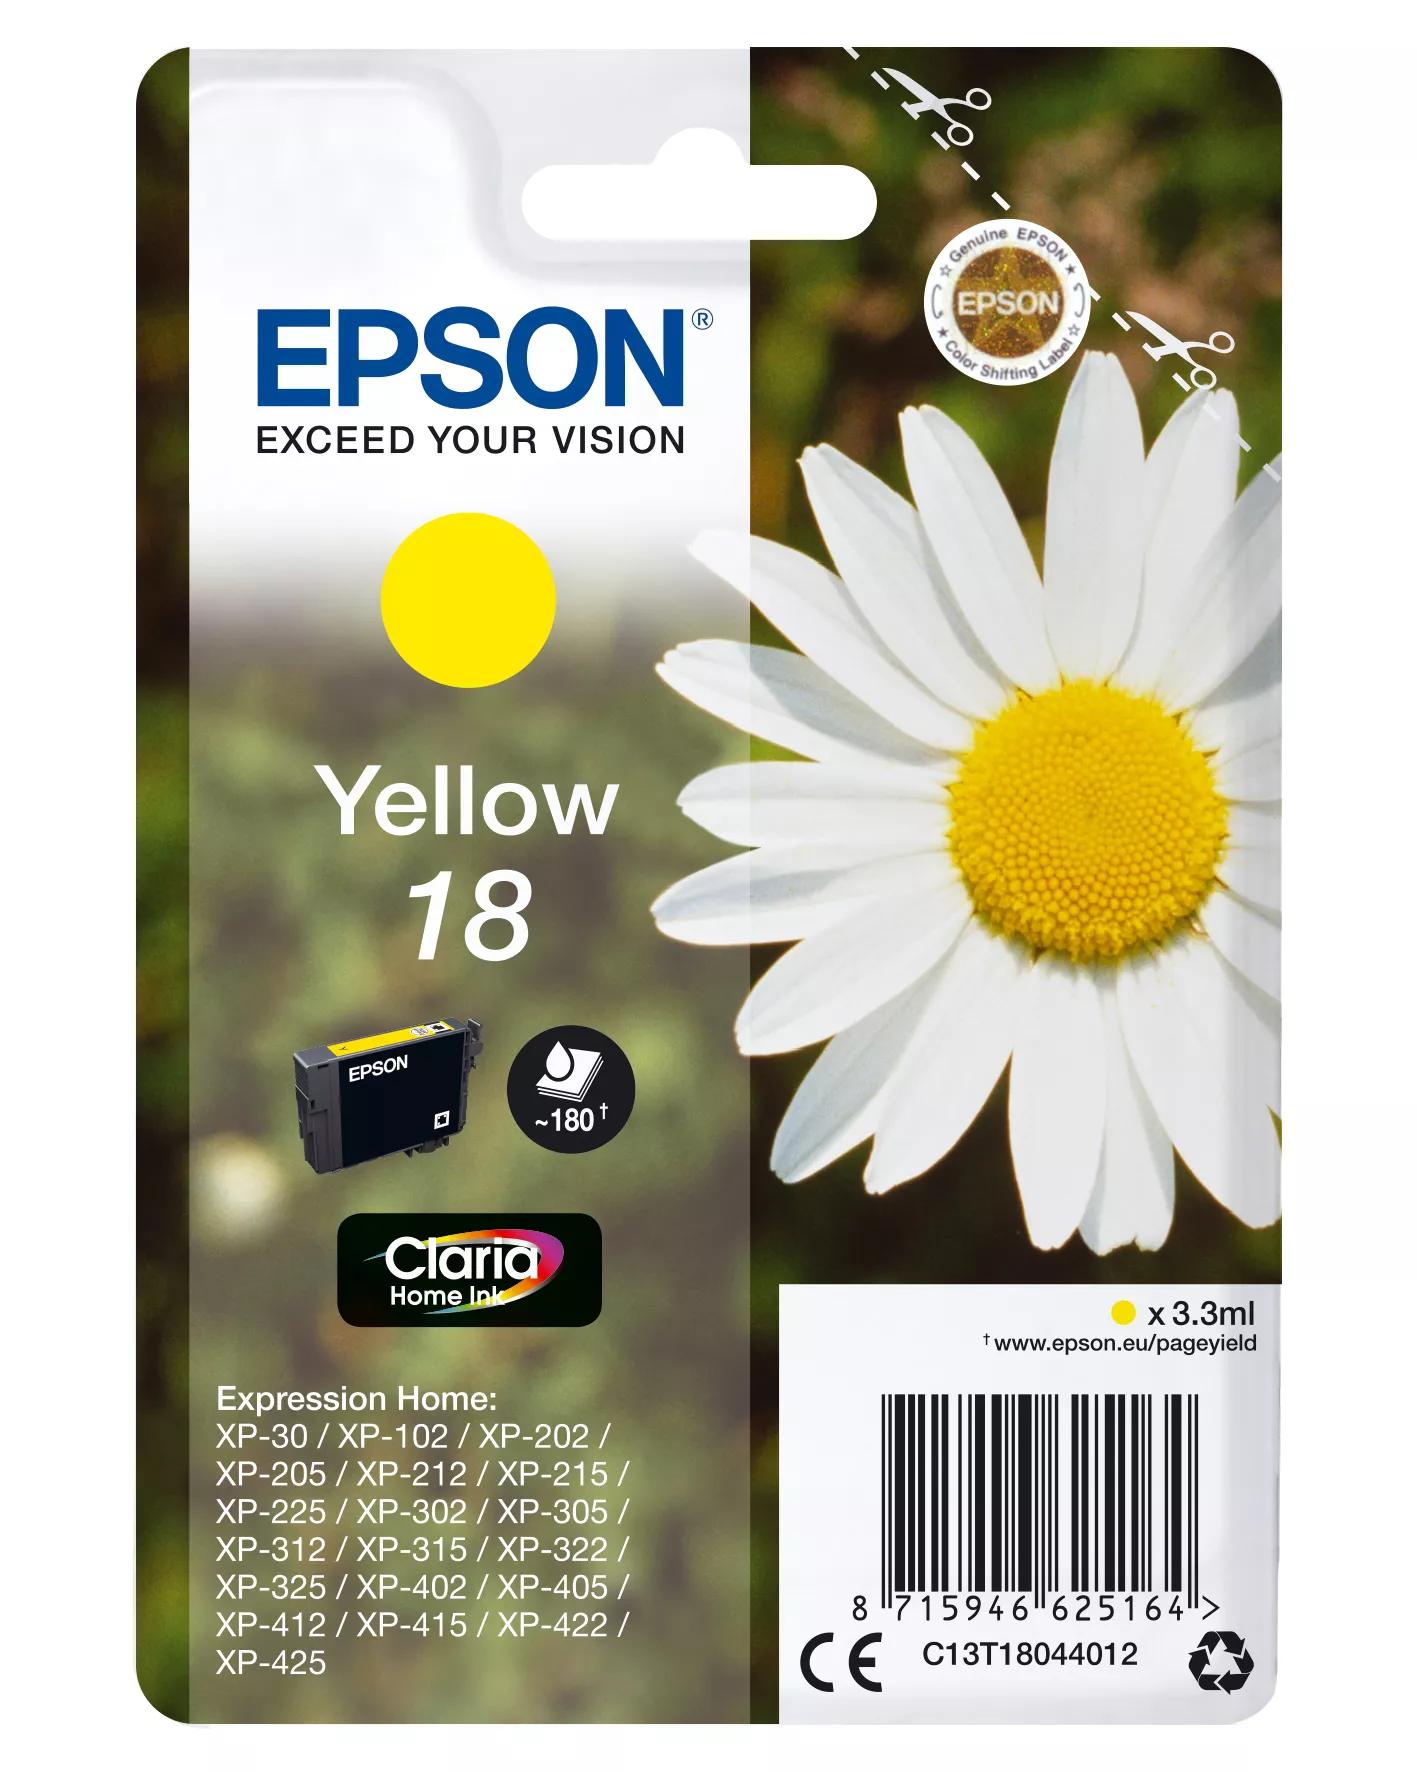 Achat EPSON 18 cartouche dencre jaune capacité standard 3.3ml - 8715946625164